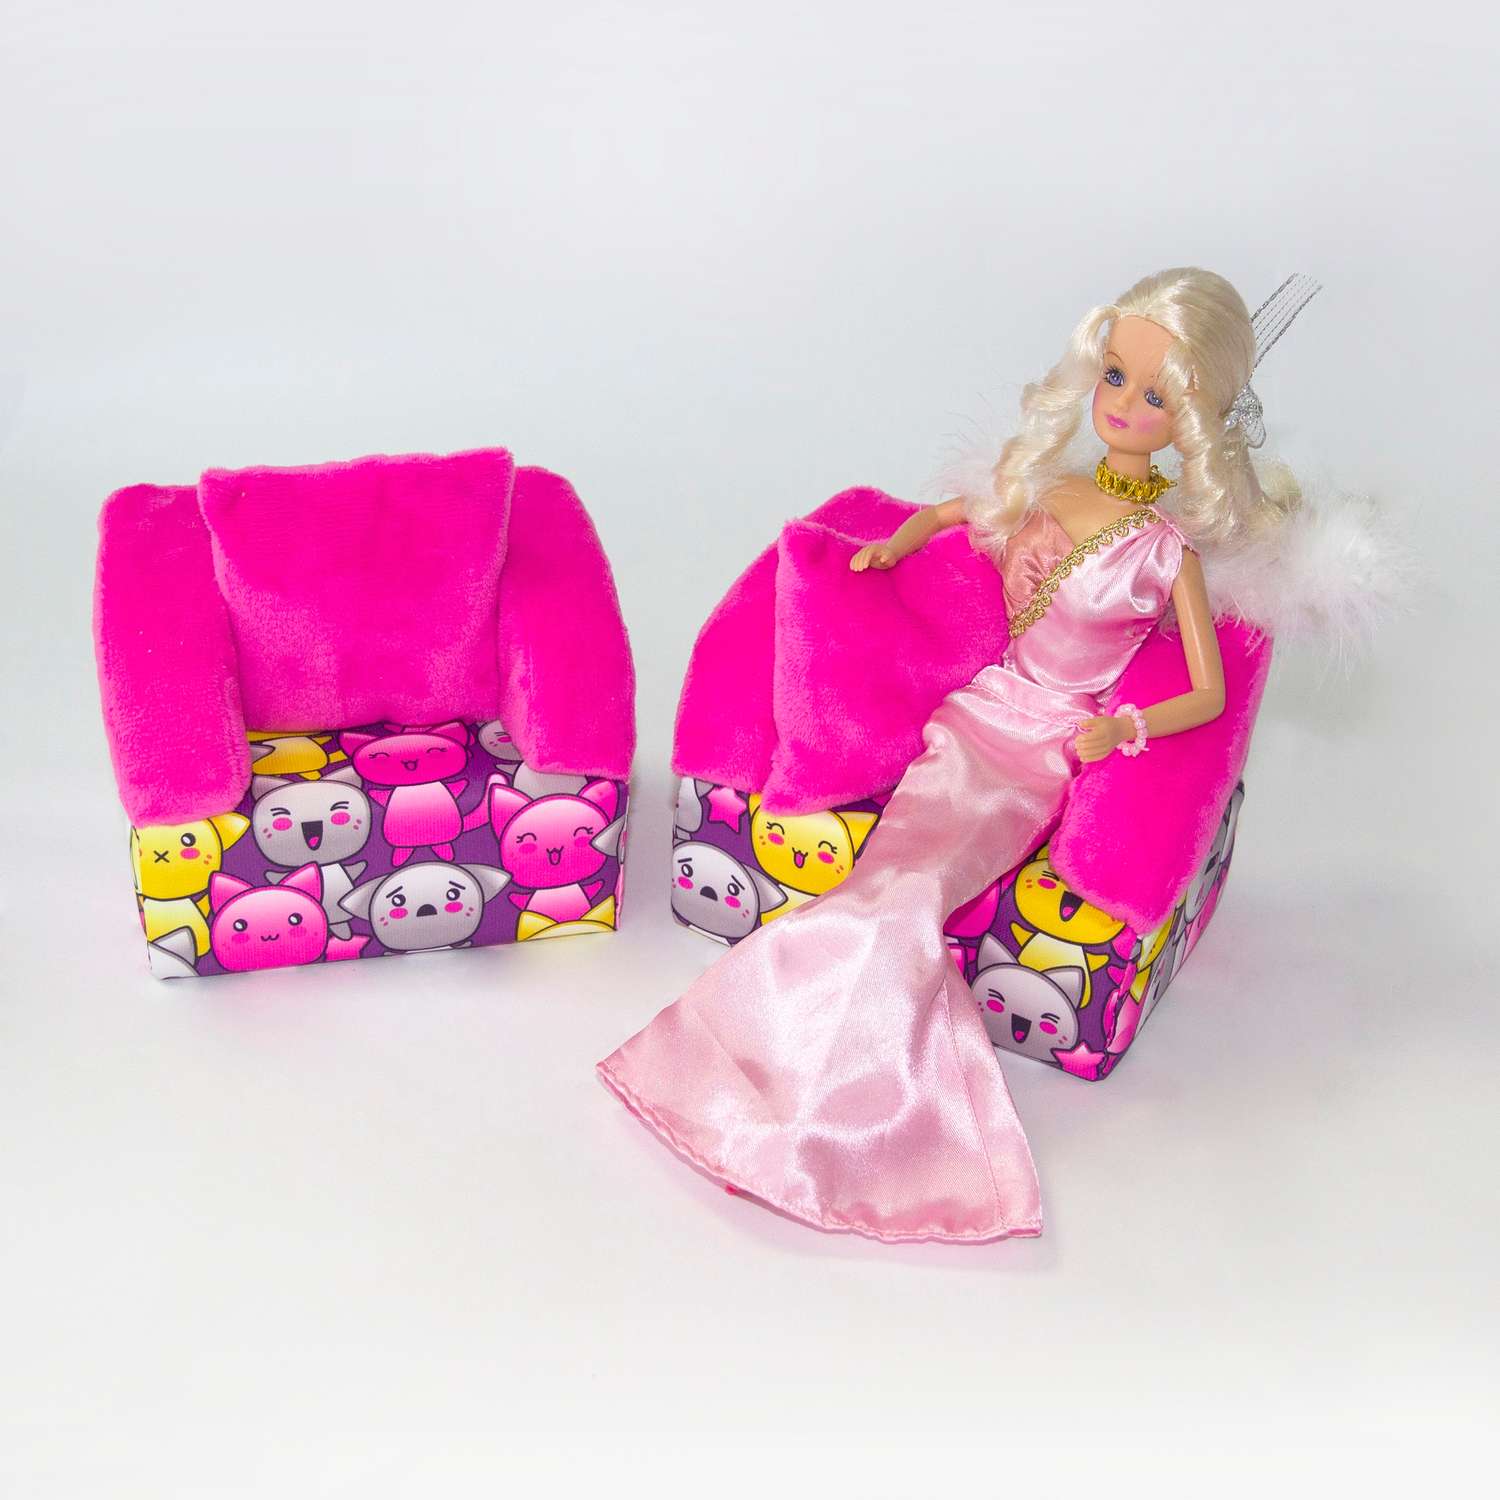 Набор мебели для кукол Belon familia Принт хор котят фиолетовый 2 кресла с подушками НМ-004/1-33 - фото 2